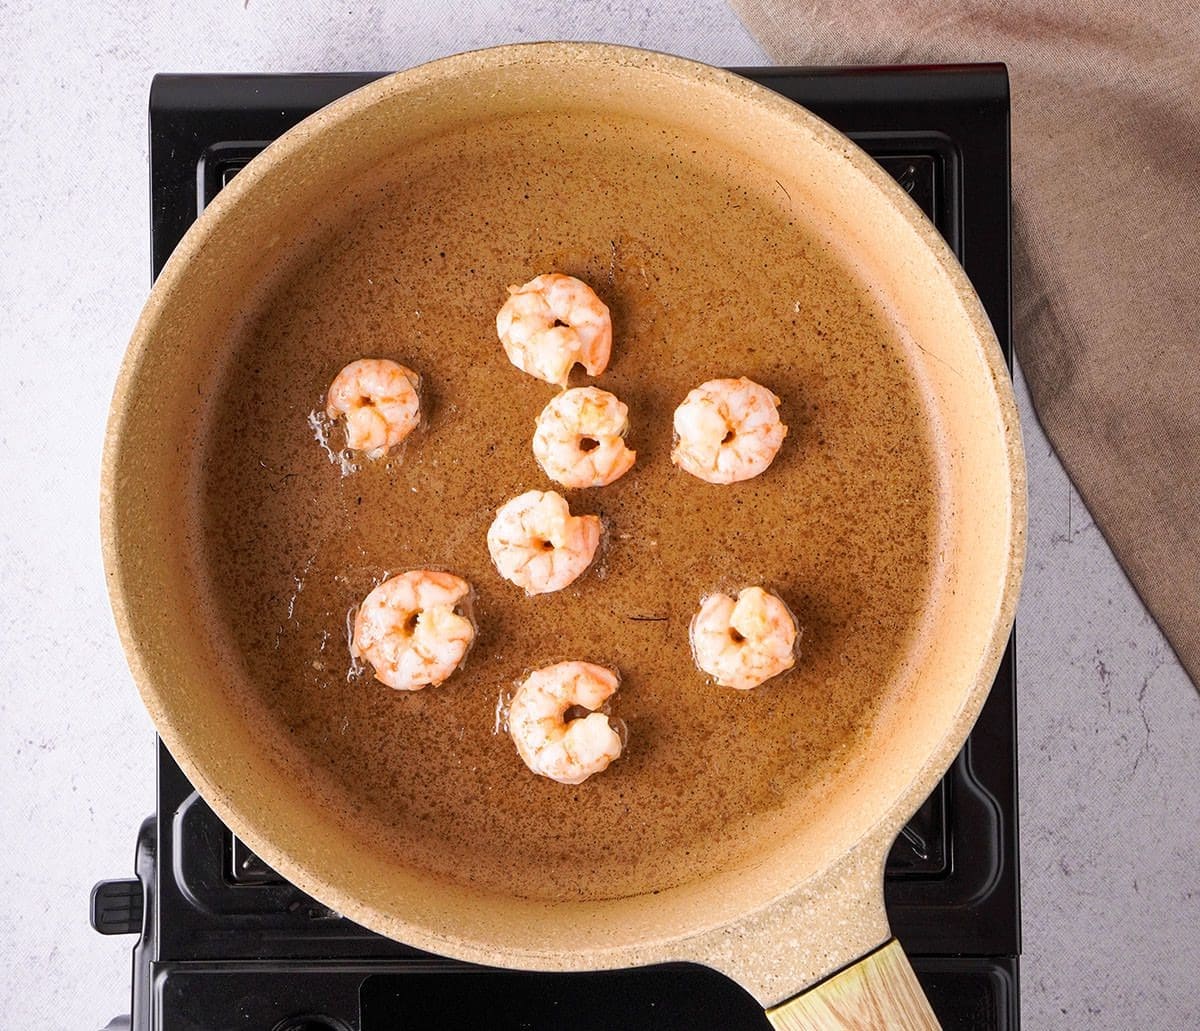 Shrimp cook in a pan full of oil.